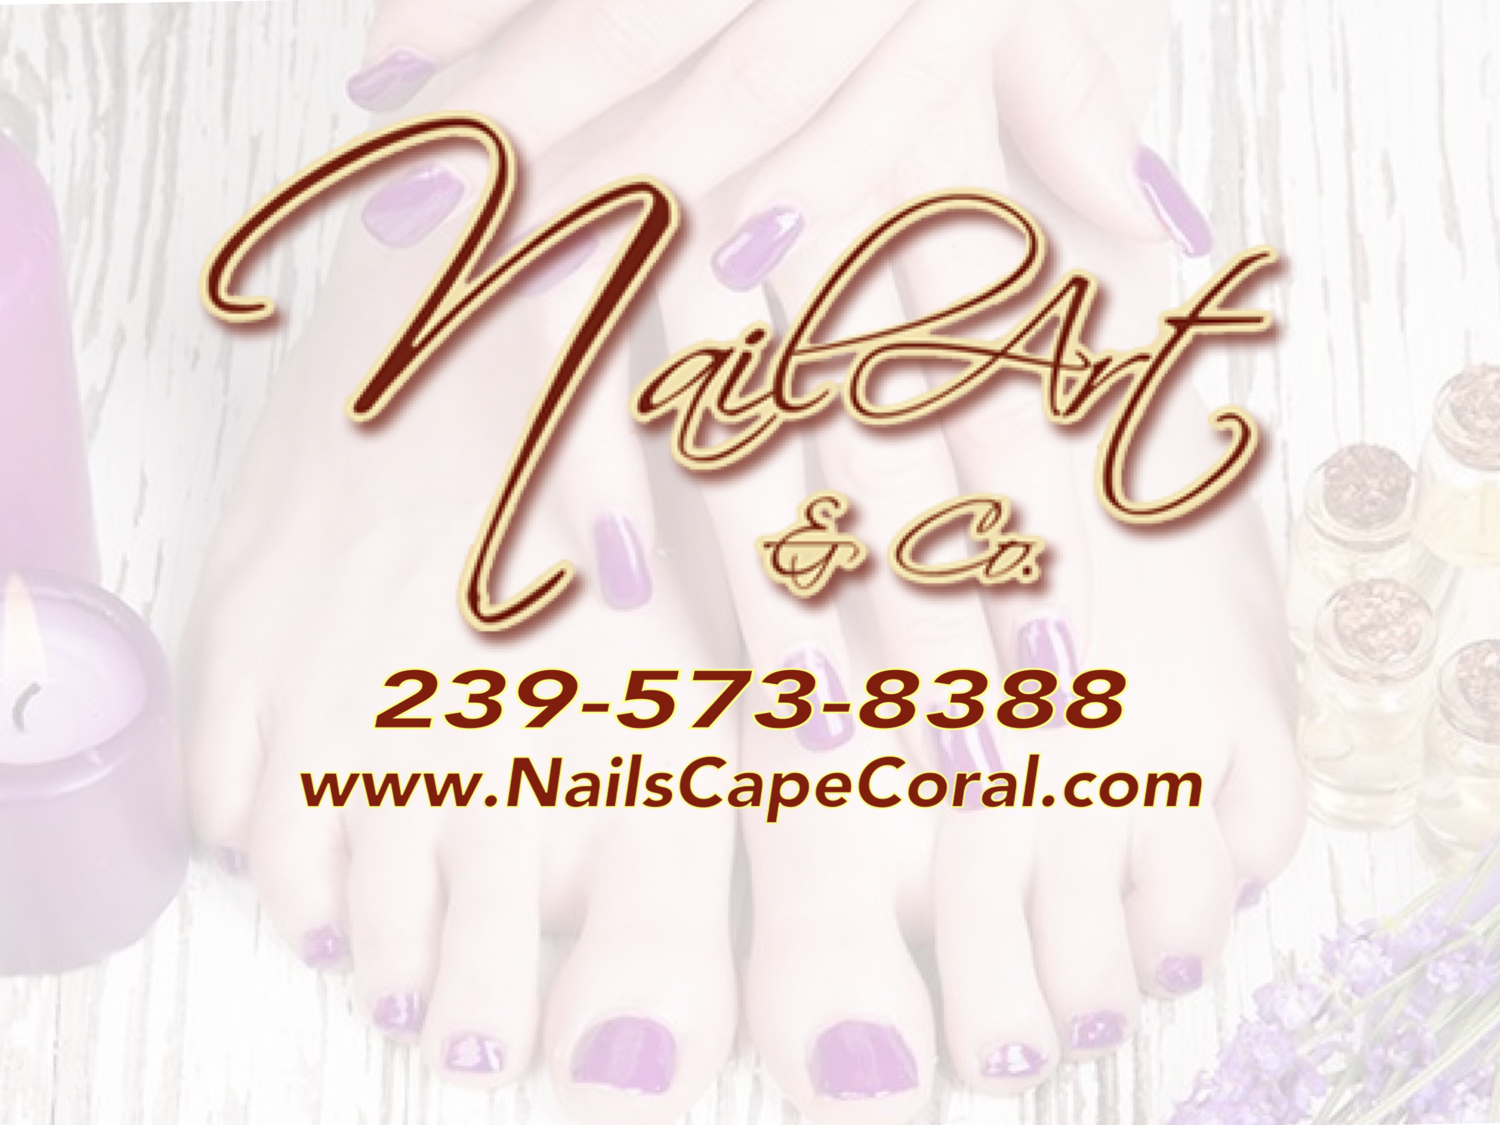 1. Nail Art 3 Cape Coral - Nail Salon in Cape Coral, FL - wide 7